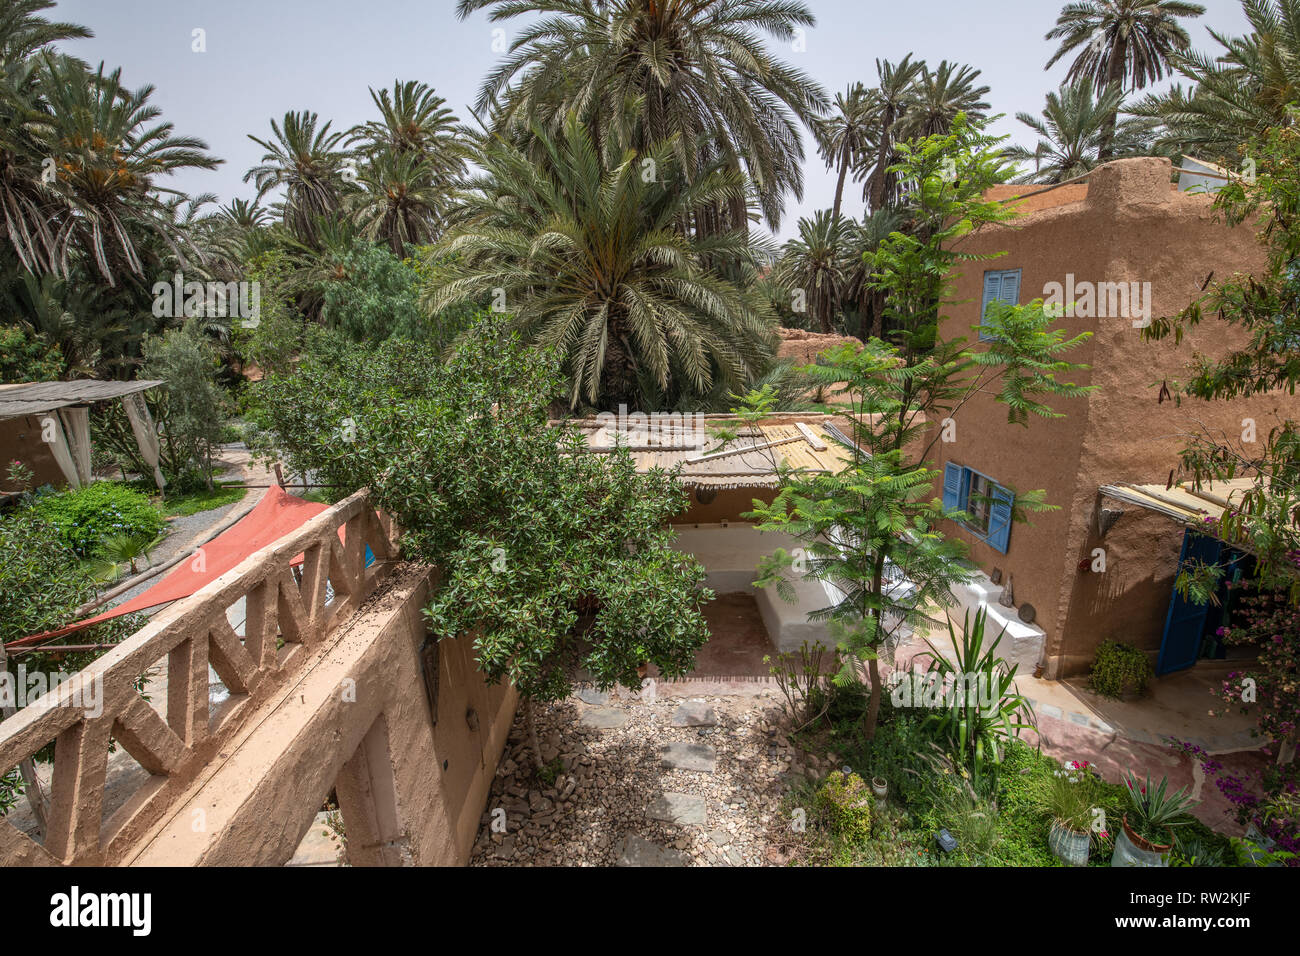 High angle view à partir de boue-brique traditionnel construit avec des palmiers poussent autour, Oasis Tighmert composé, Maroc Banque D'Images